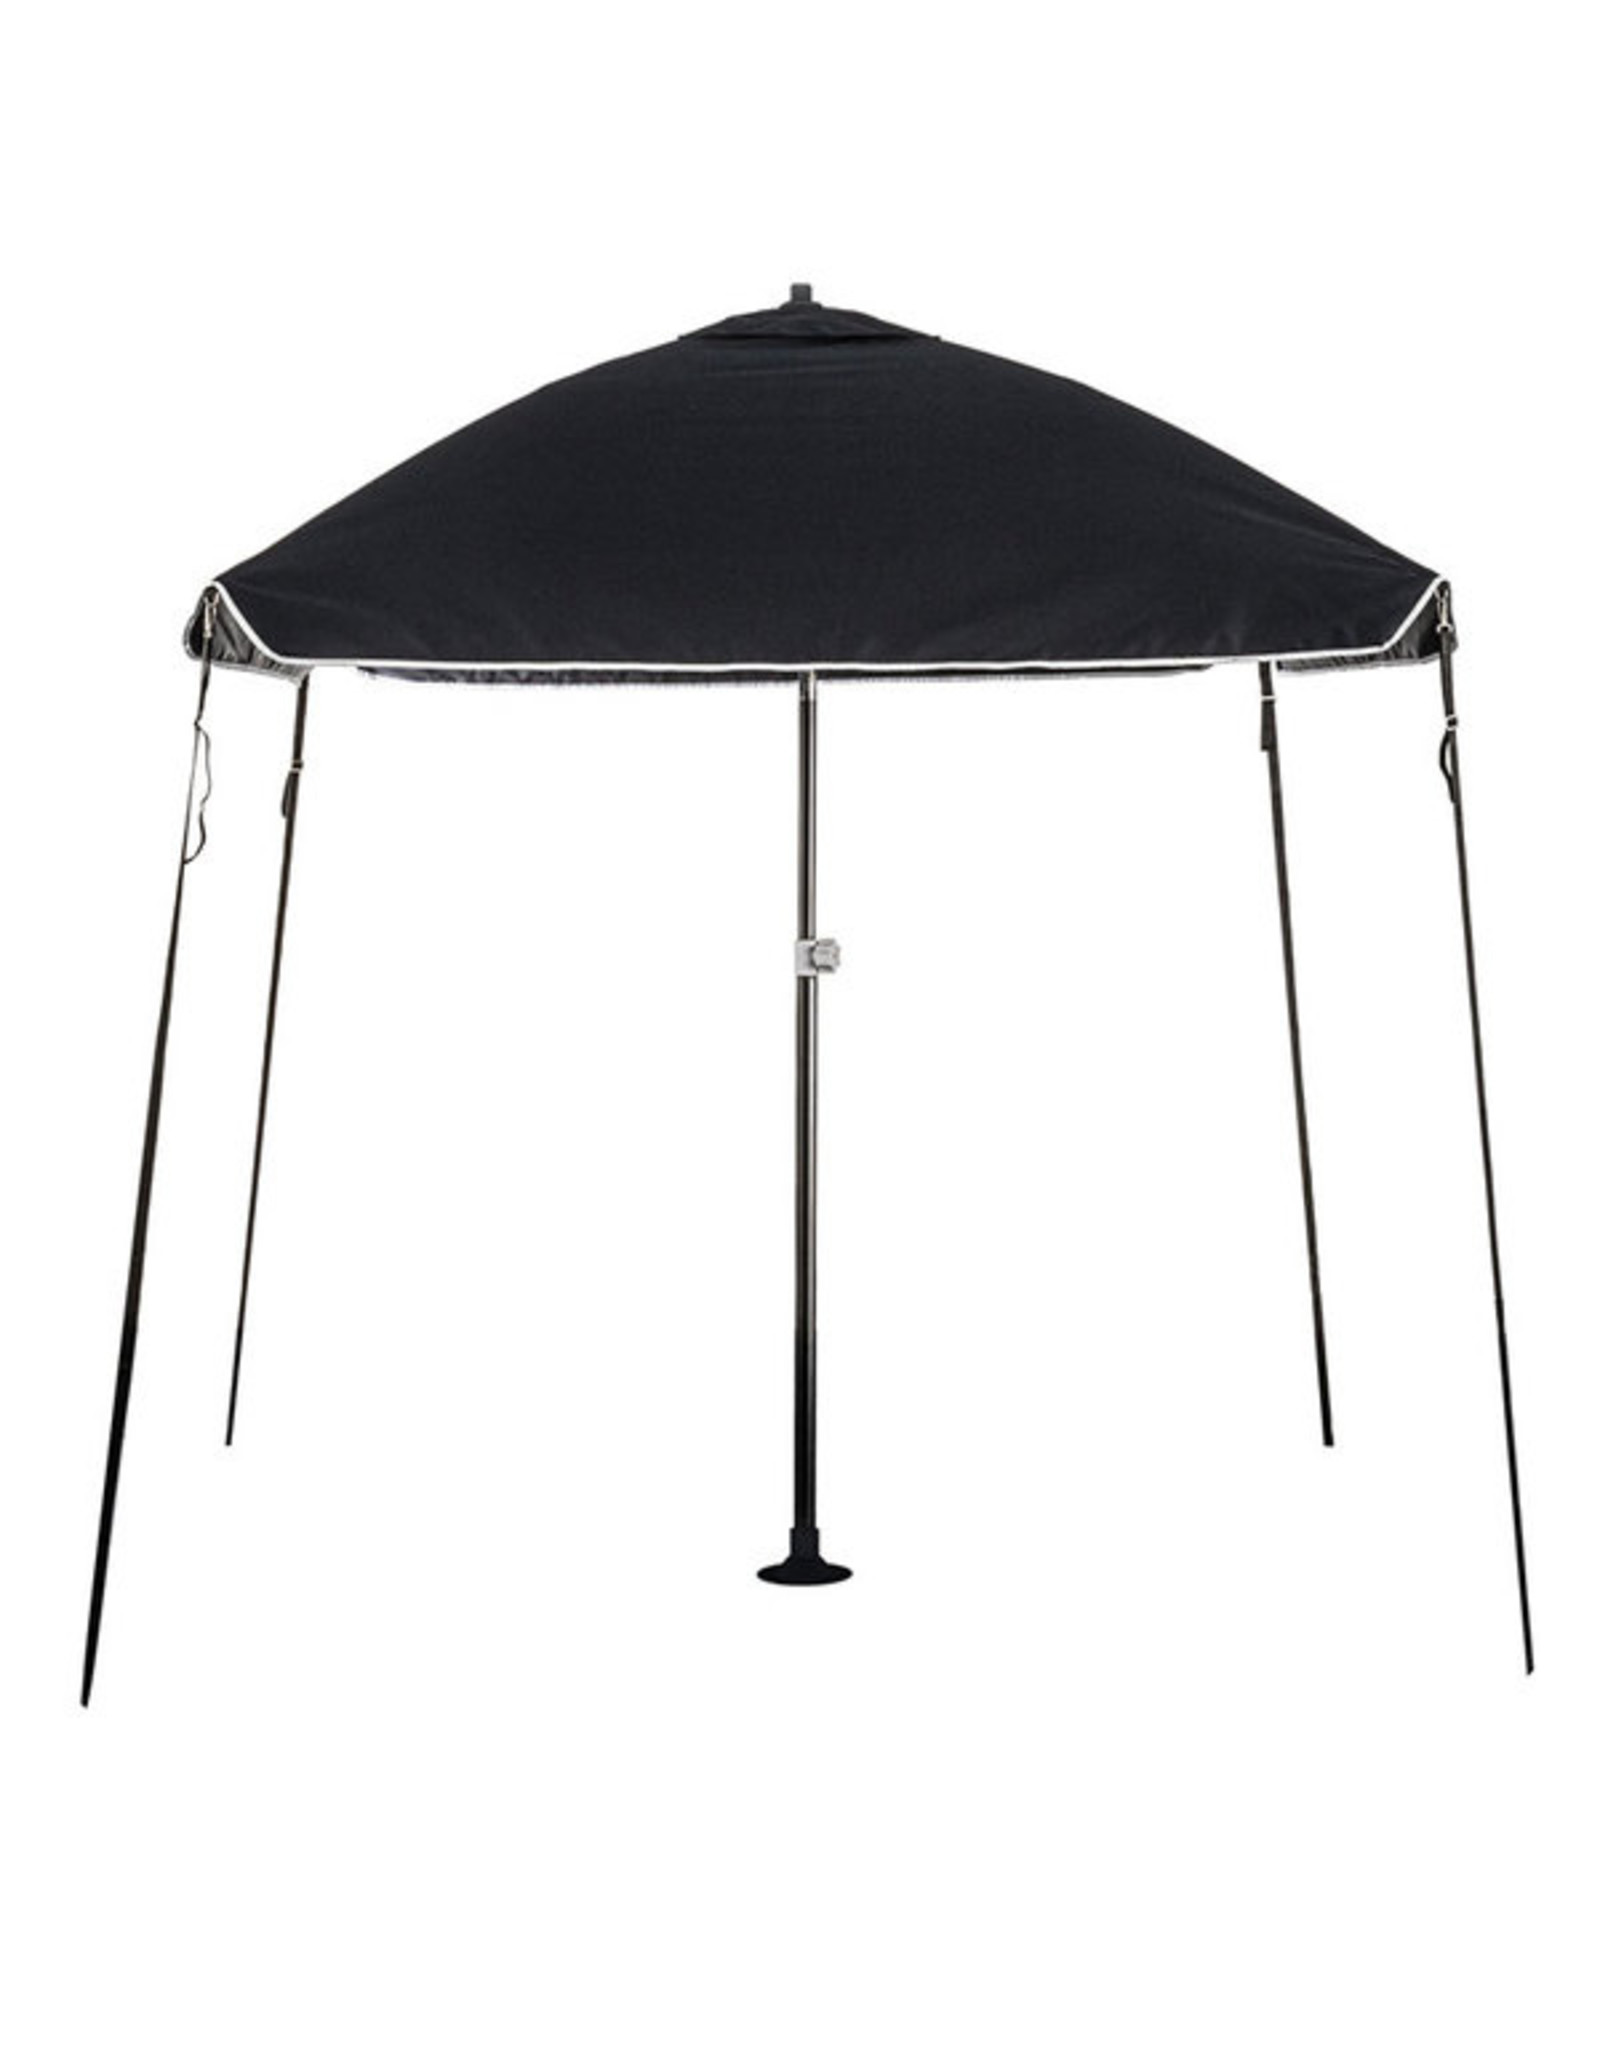 Protecq Bimini parasol 200x200cm zwart Knik